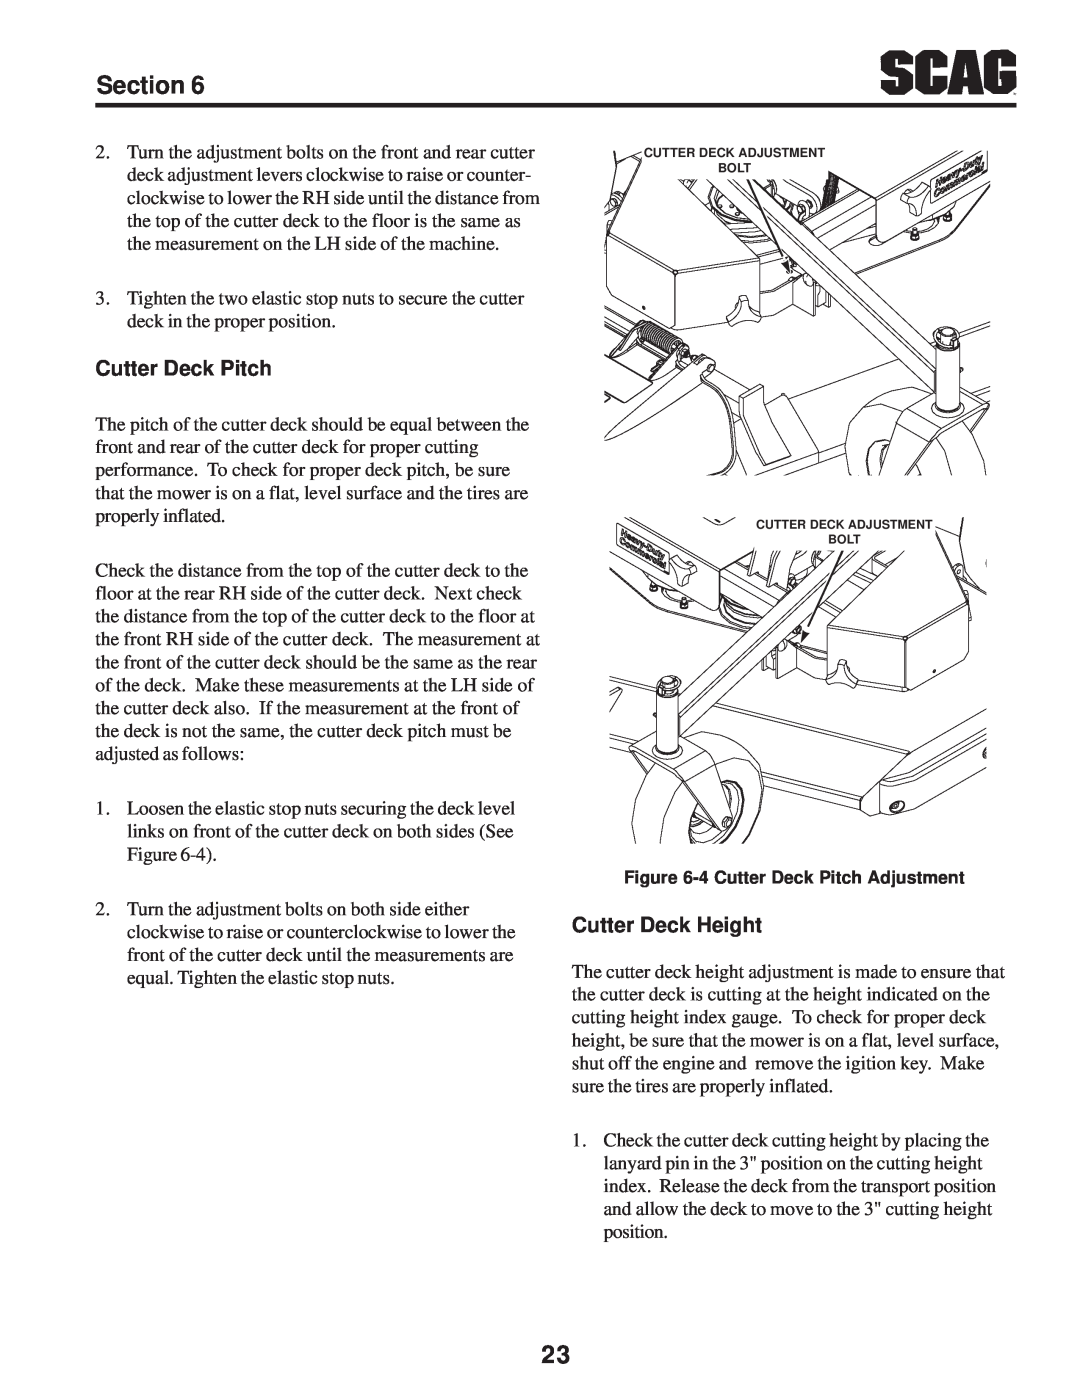 Scag Power Equipment SWZV manual Cutter Deck Height, 4 Cutter Deck Pitch Adjustment 